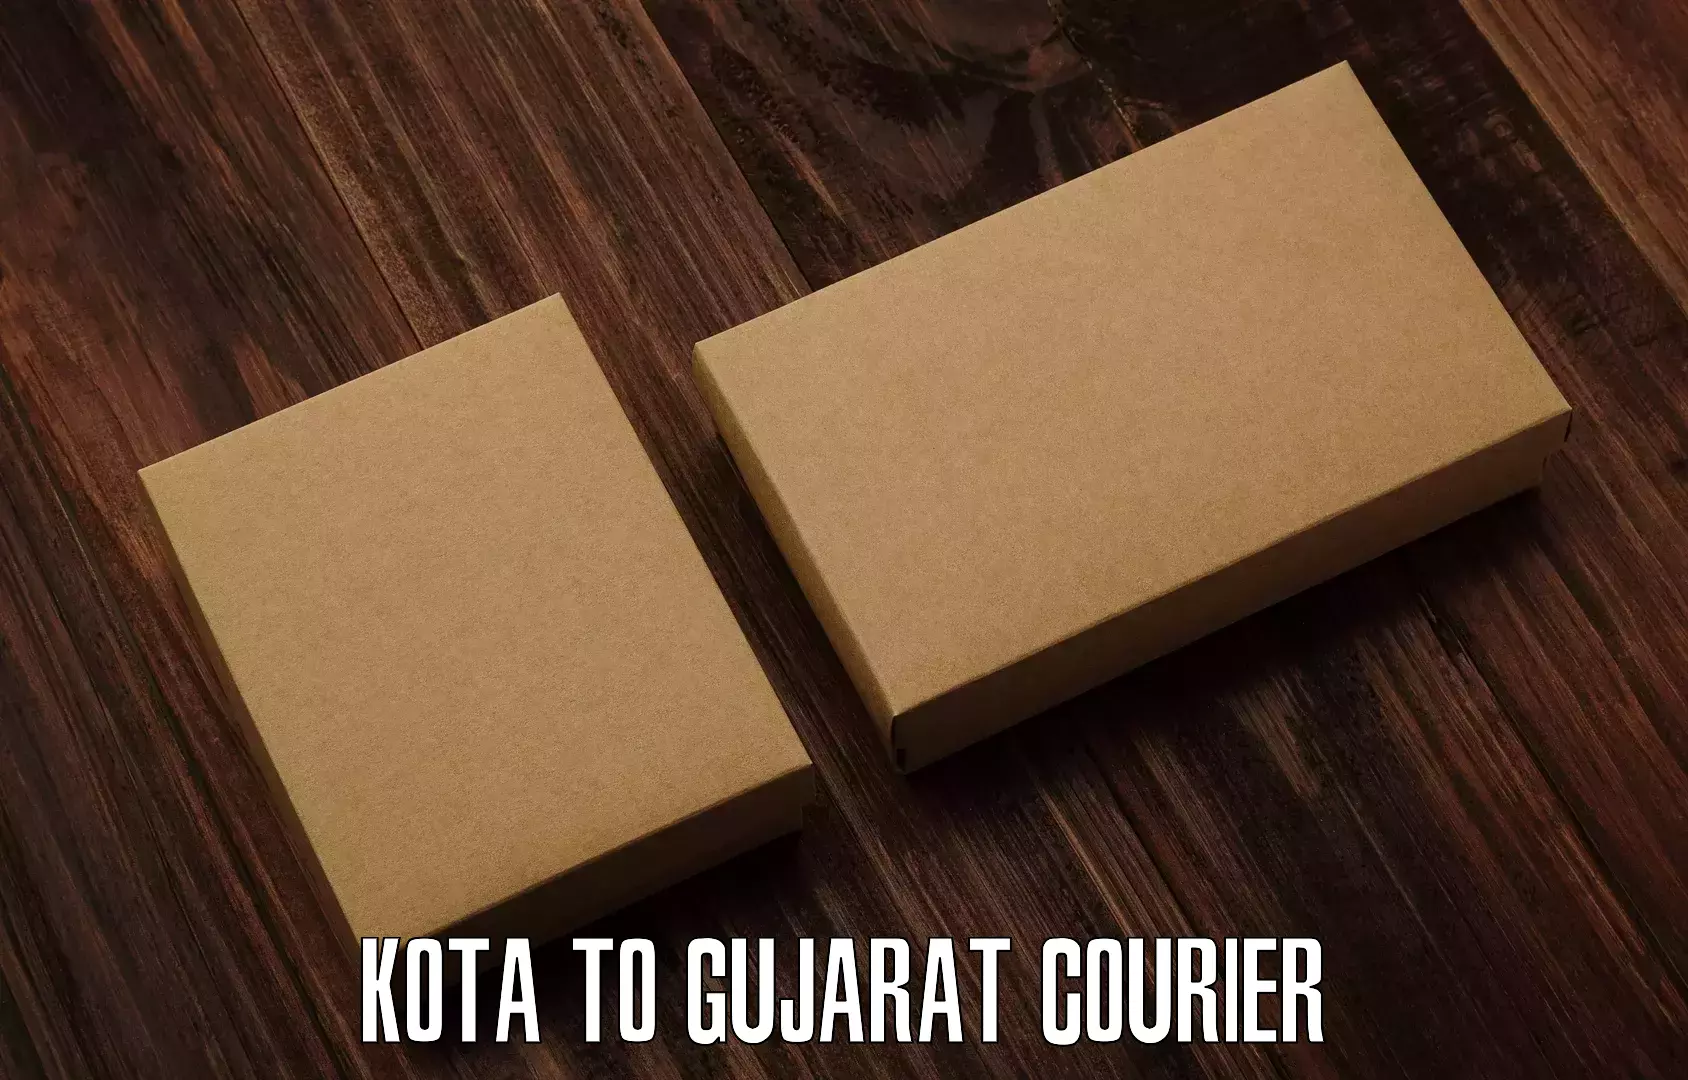 Tailored shipping plans in Kota to Gujarat